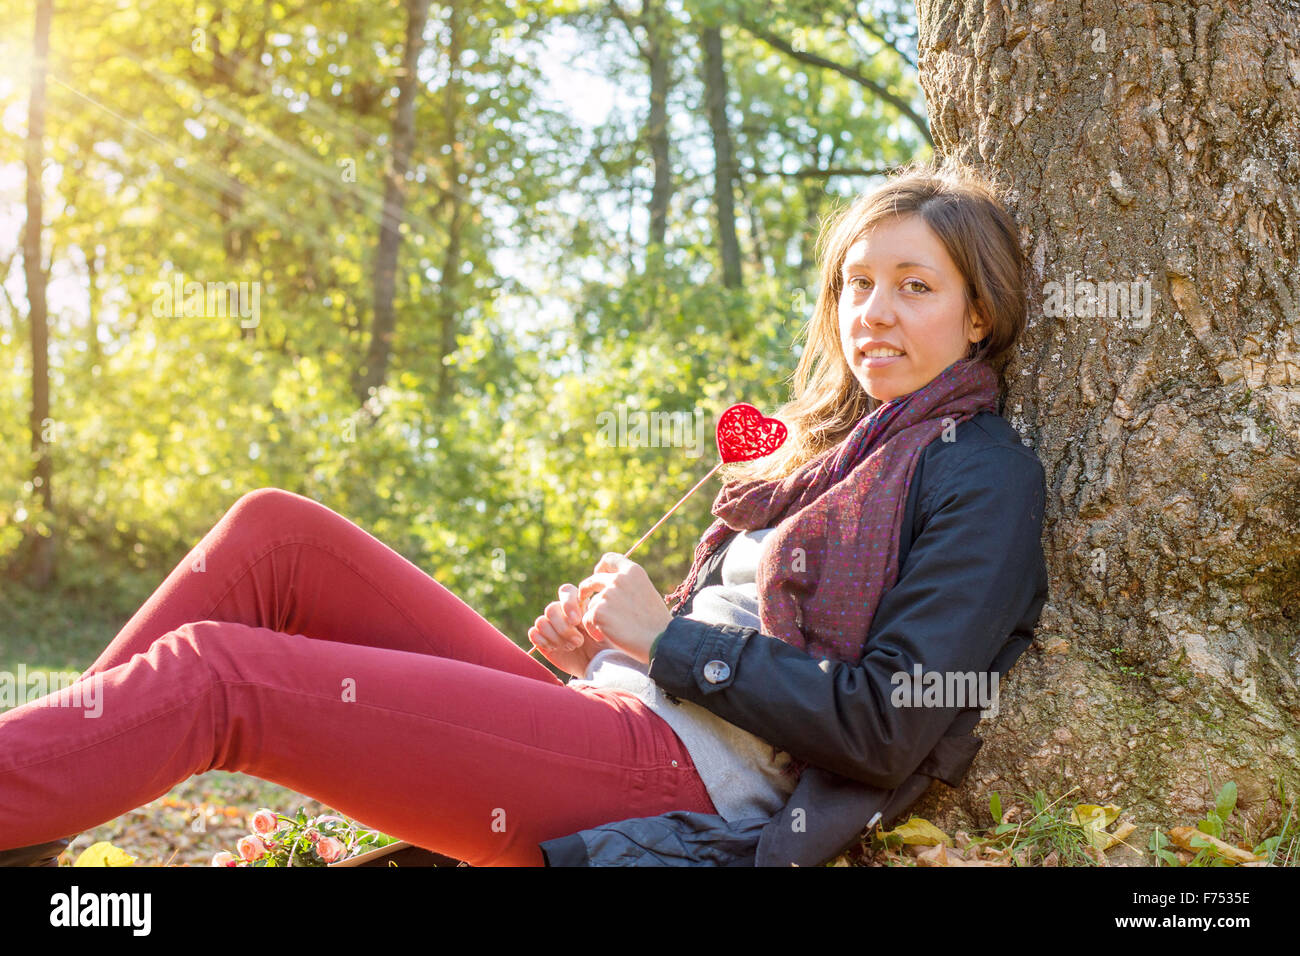 Bellissima ragazza con cuore rosso su un bastone mentre è seduto sull'erba. Relax in una giornata autunnale Foto Stock